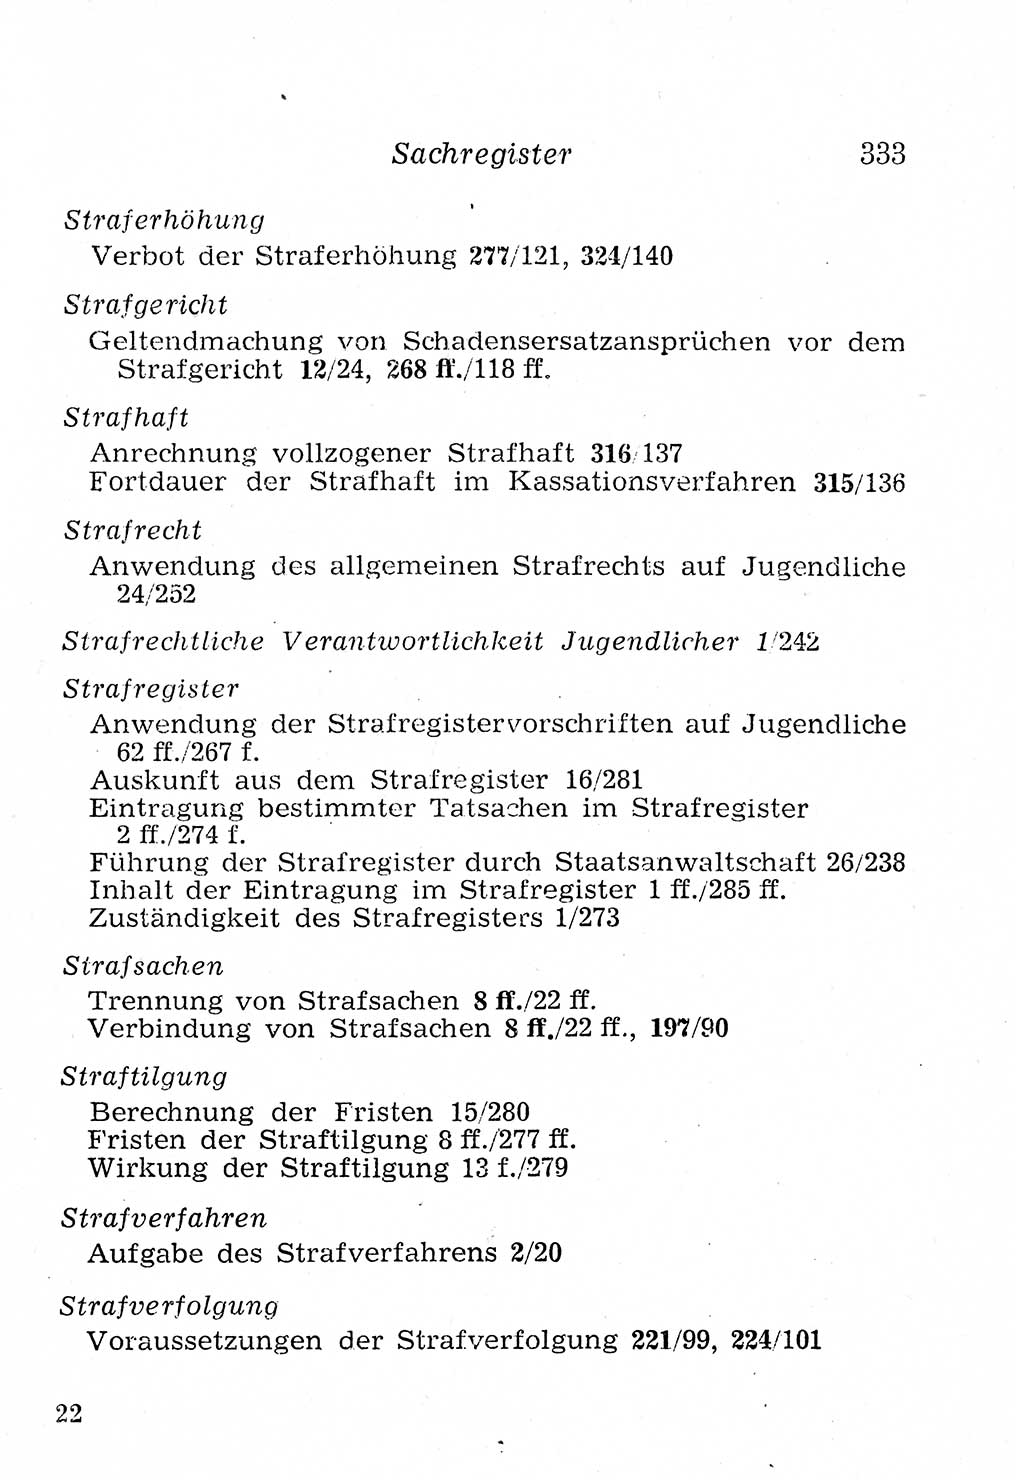 Strafprozeßordnung (StPO), Gerichtsverfassungsgesetz (GVG), Staatsanwaltsgesetz (StAG), Jugendgerichtsgesetz (JGG) und Strafregistergesetz (StRegG) [Deutsche Demokratische Republik (DDR)] 1958, Seite 333 (StPO GVG StAG JGG StRegG DDR 1958, S. 333)